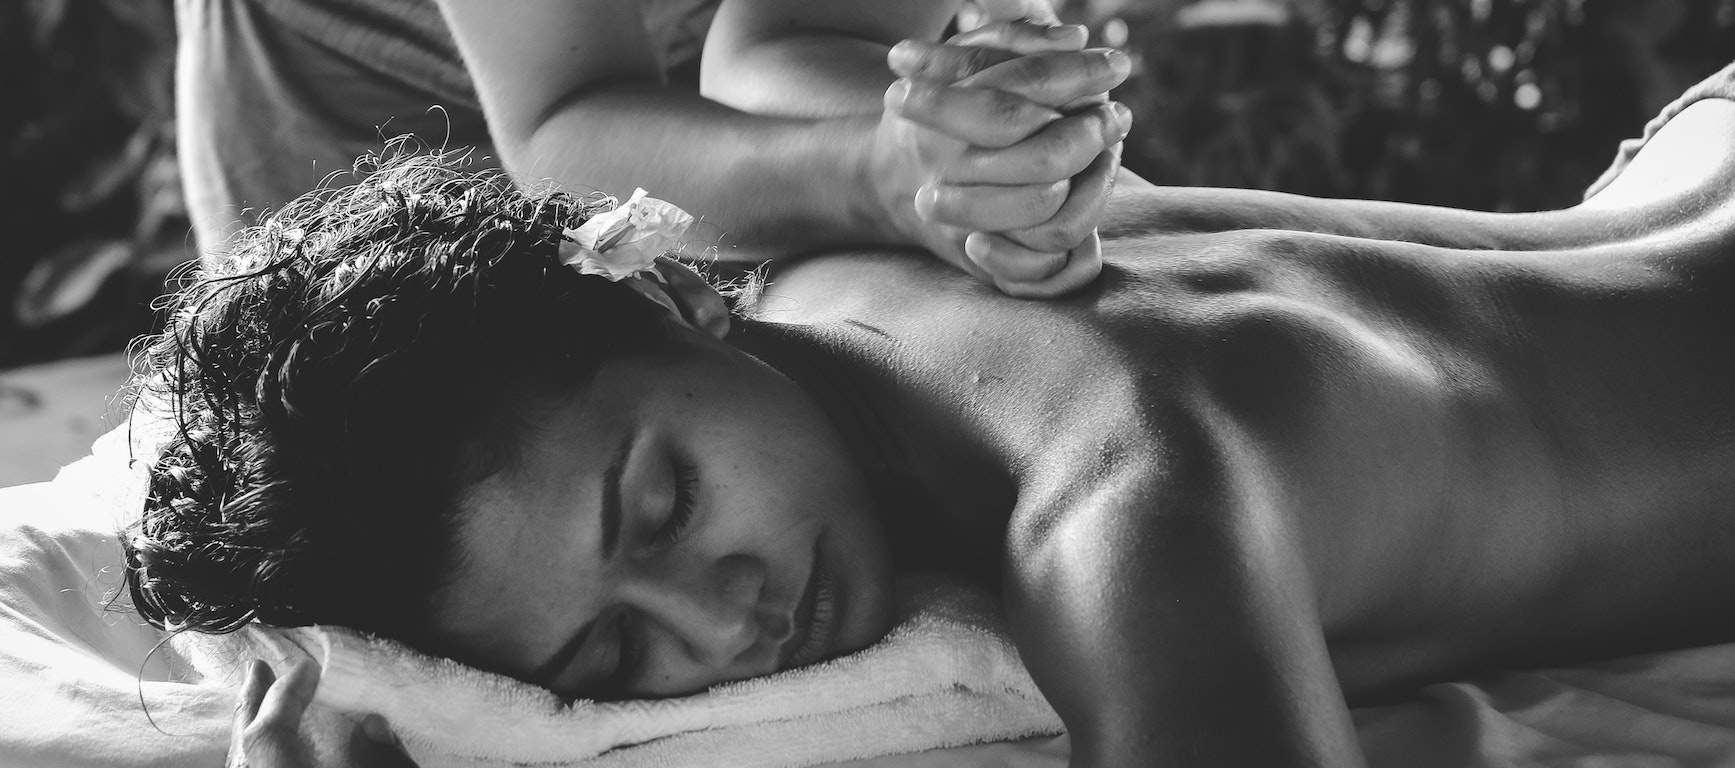 wellness massage touch